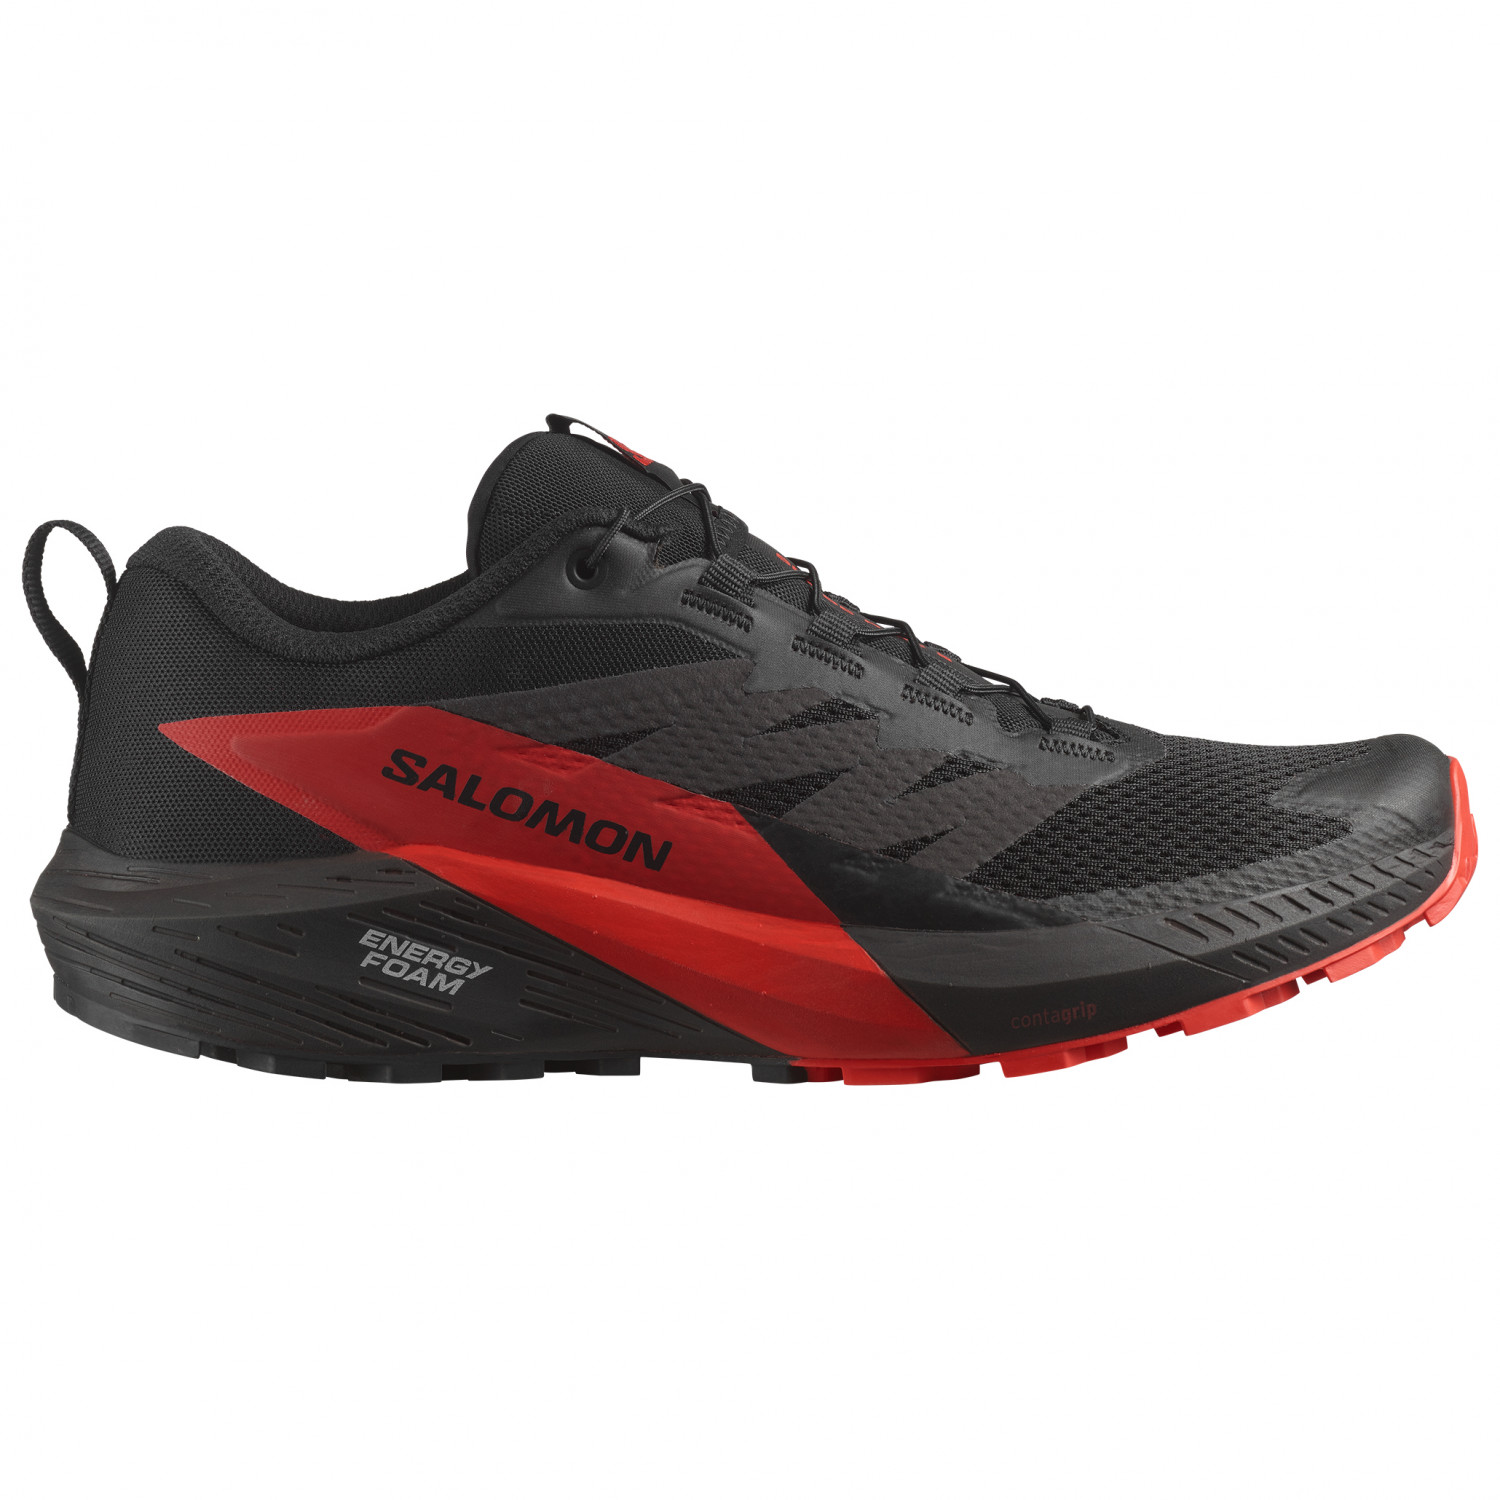 Кроссовки для бега по пересеченной местности Salomon Sense Ride 5, цвет Black/Fiery Red/Black